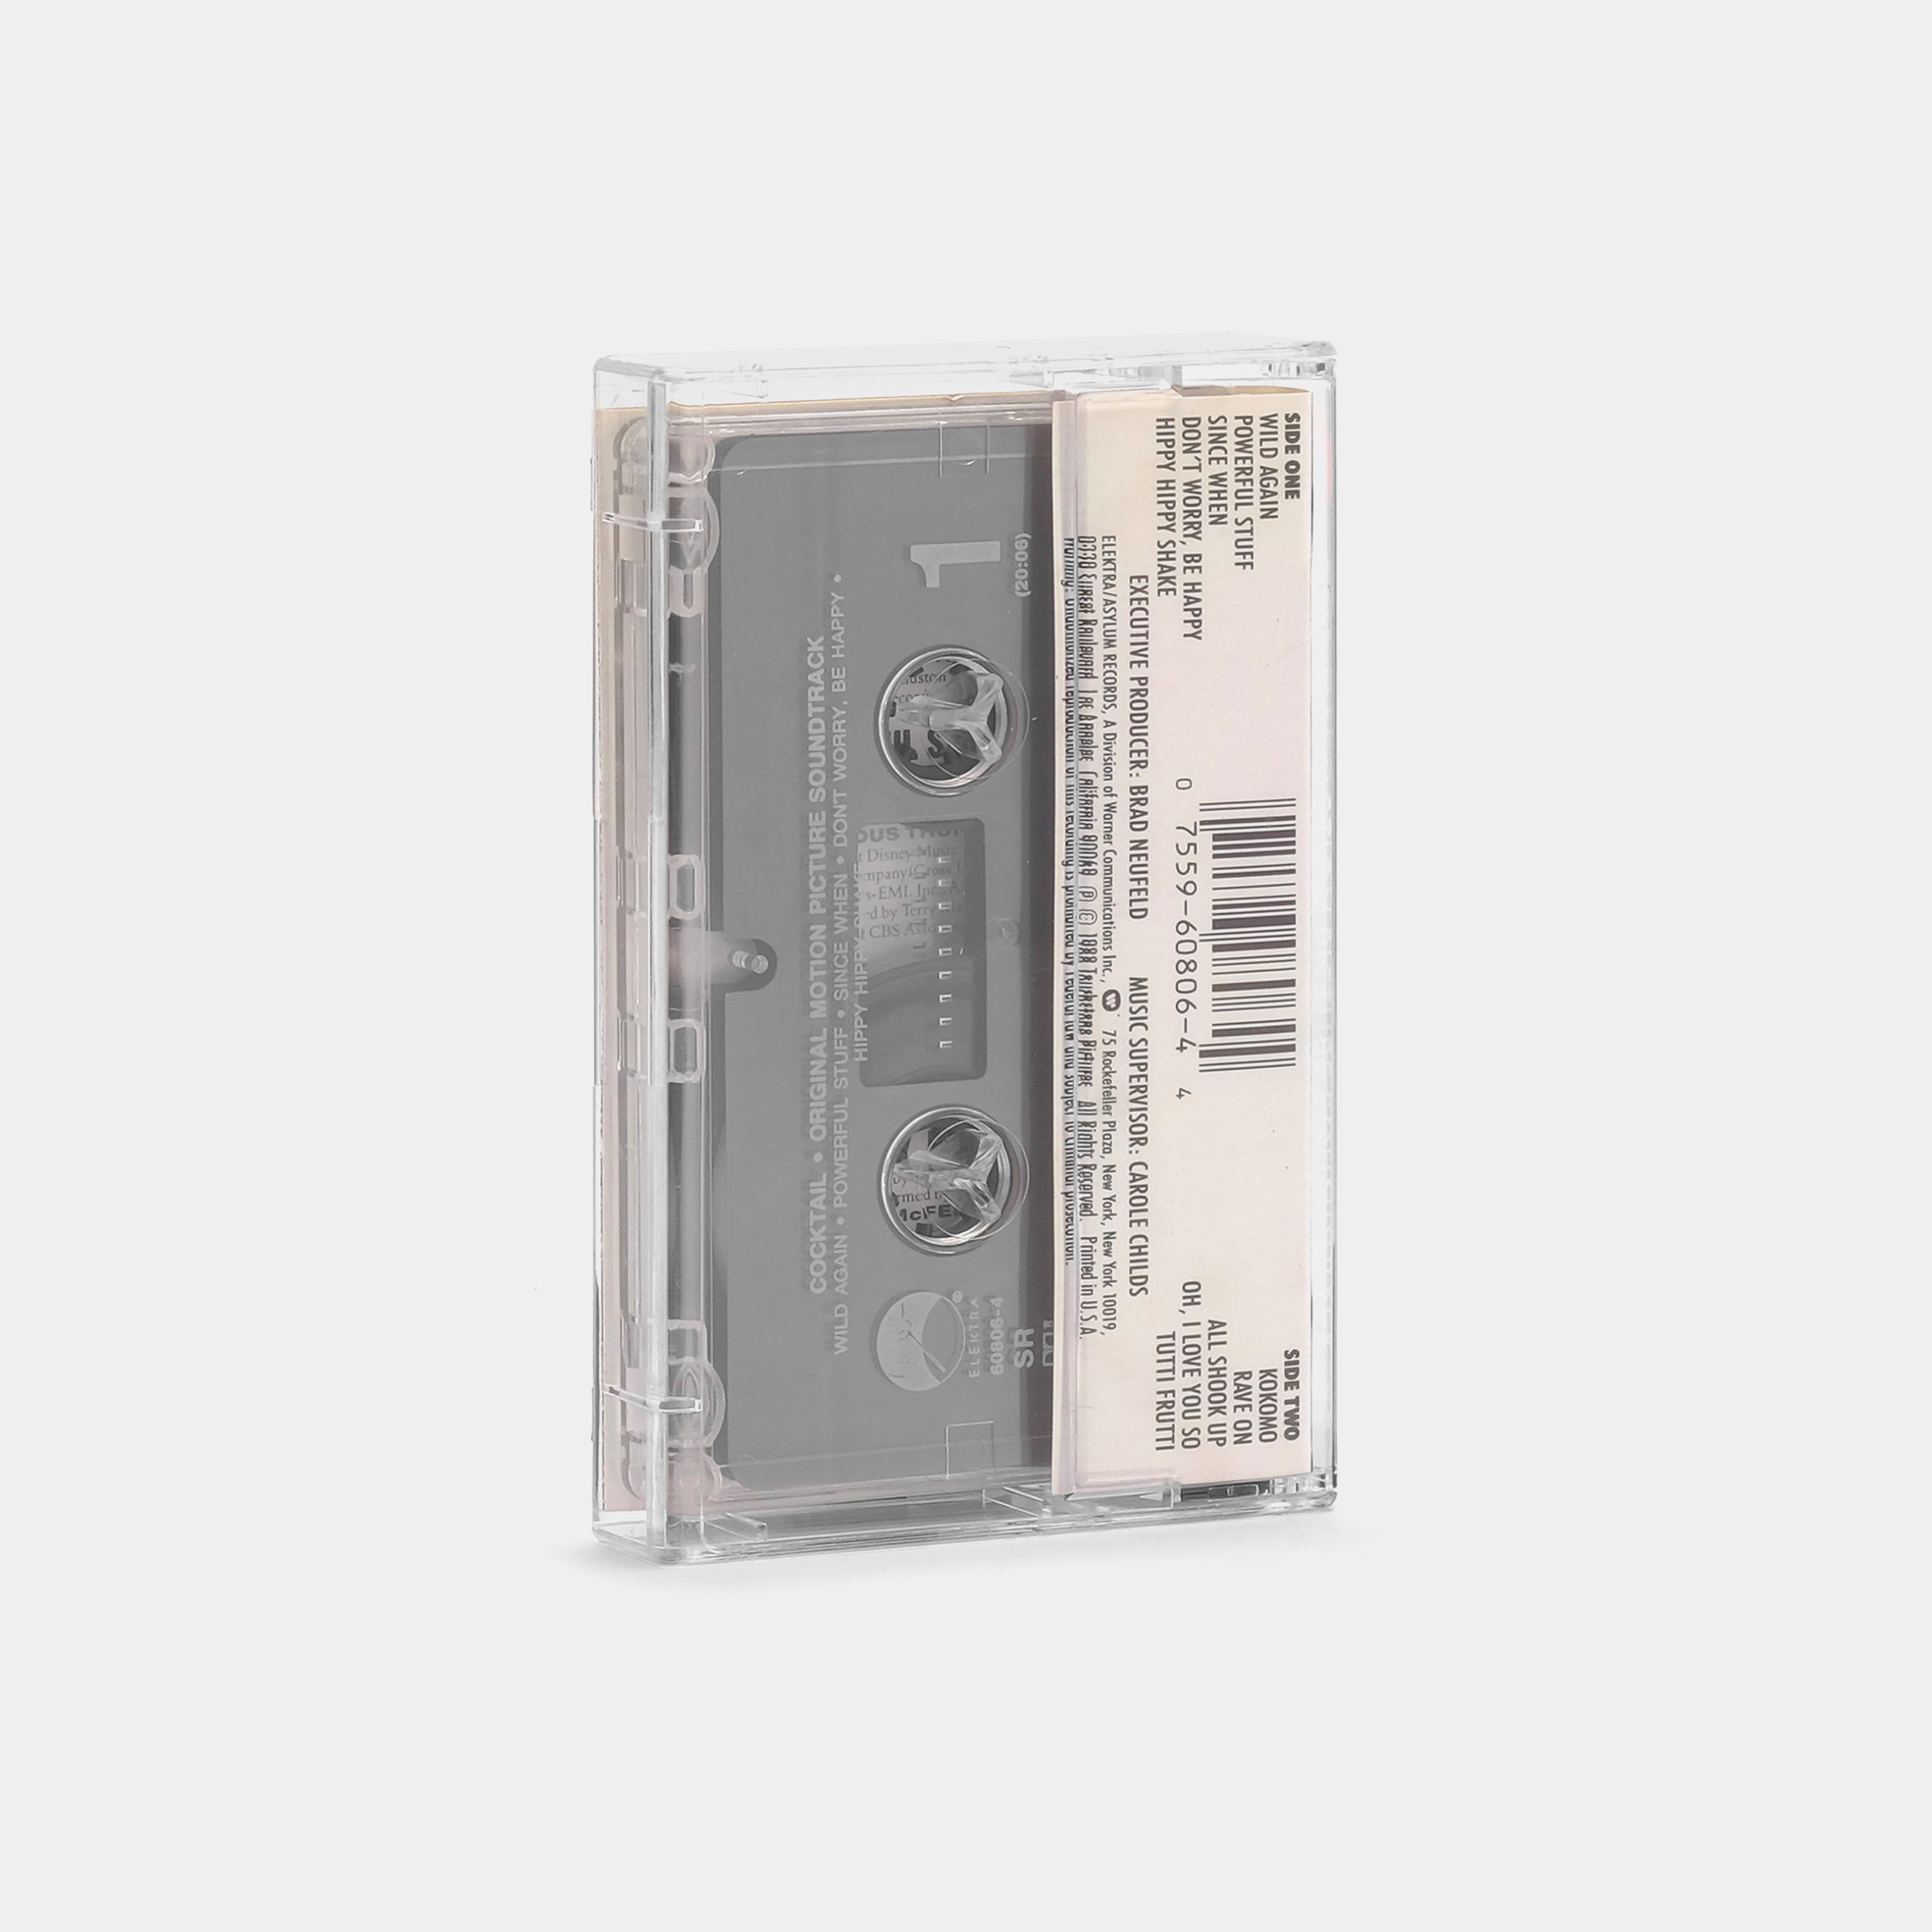 Cocktail (Original Motion Picture Soundtrack) Cassette Tape